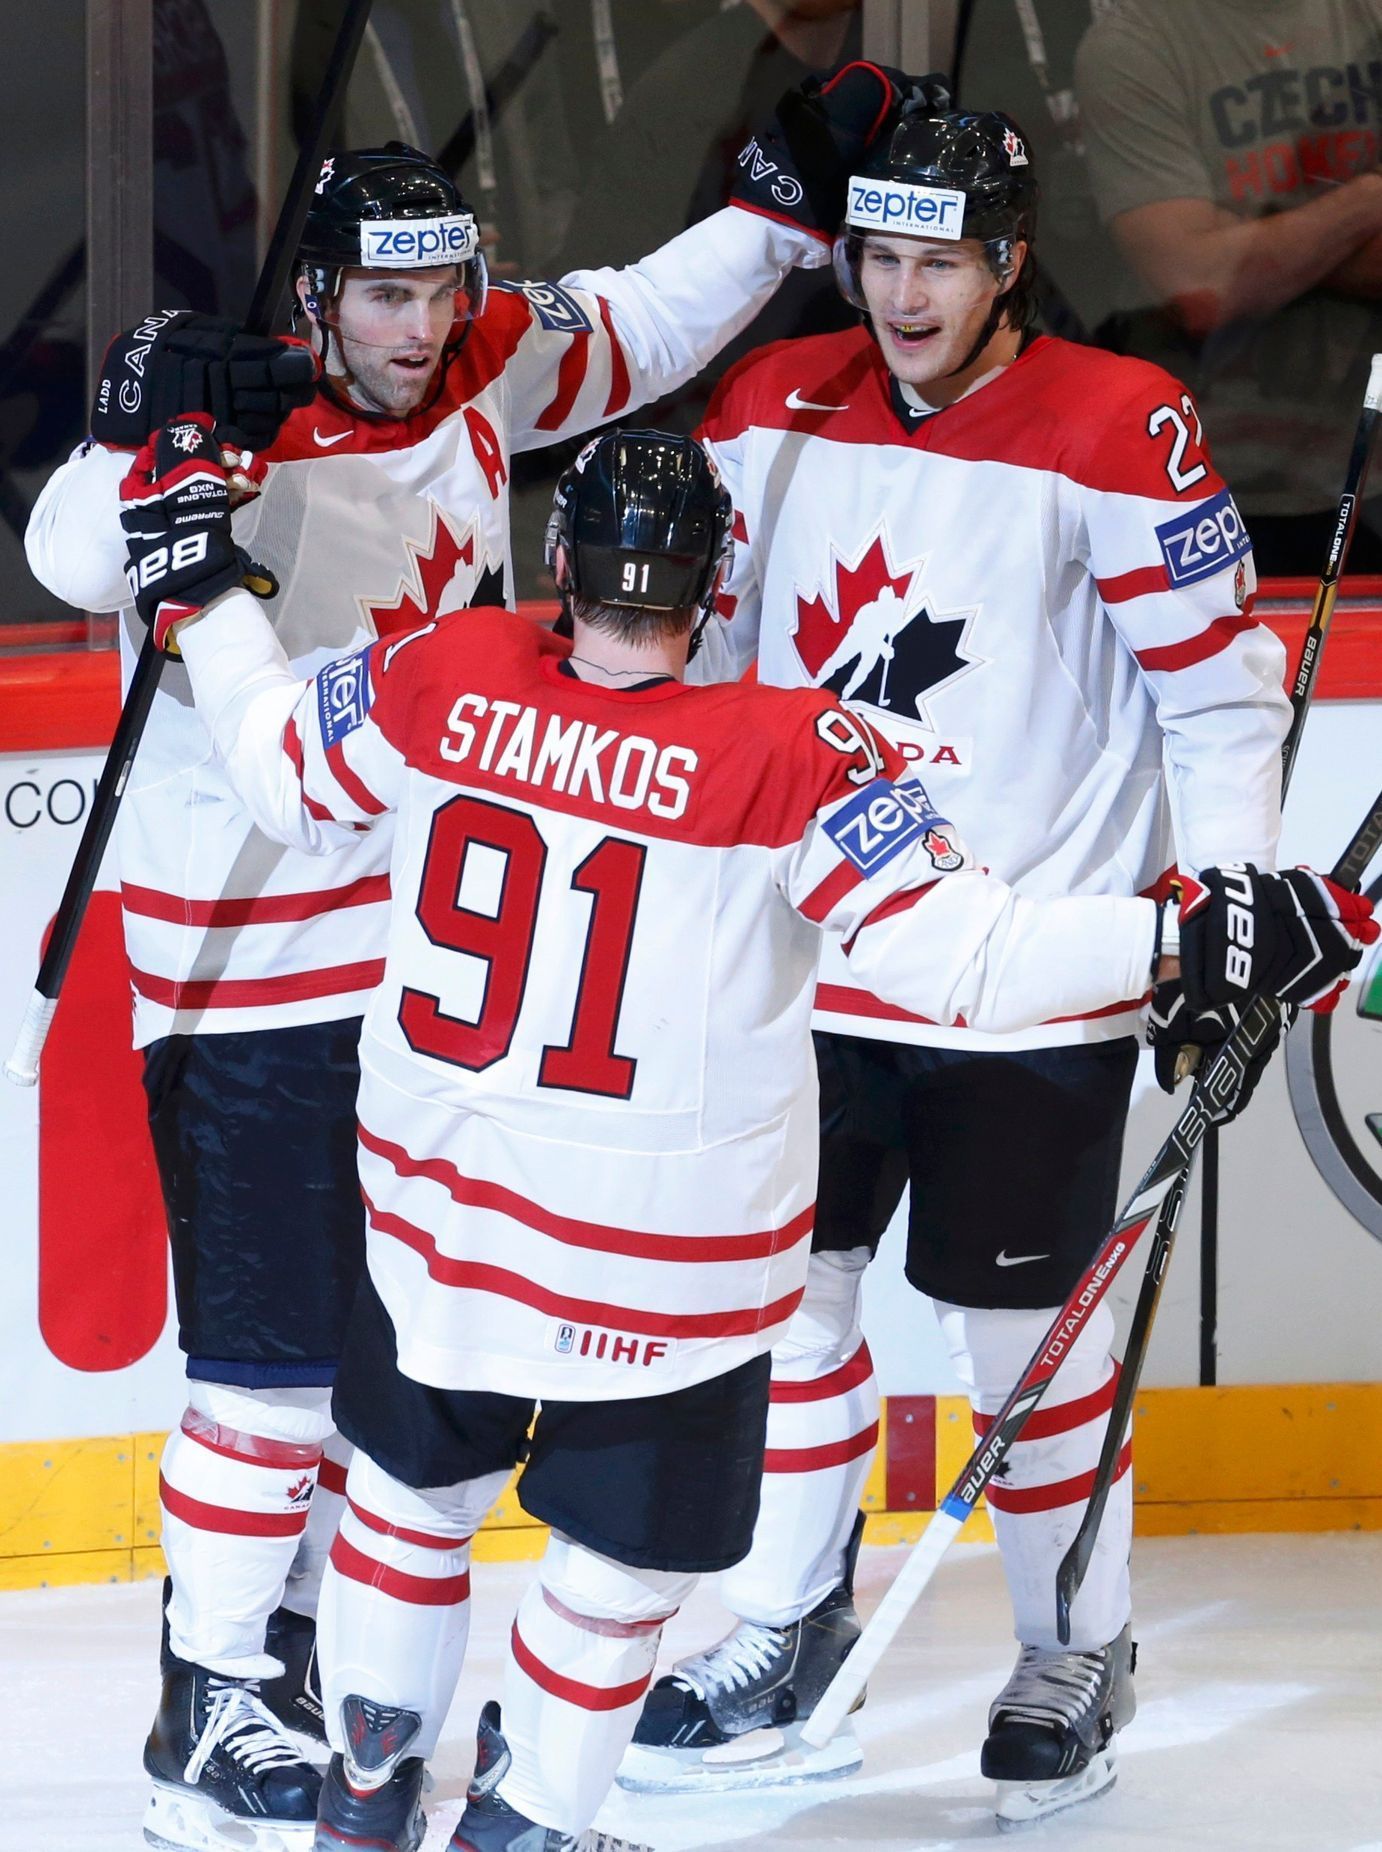 MS v hokeji 2013, Kanada - Švýcarsko: Kanada slaví gól